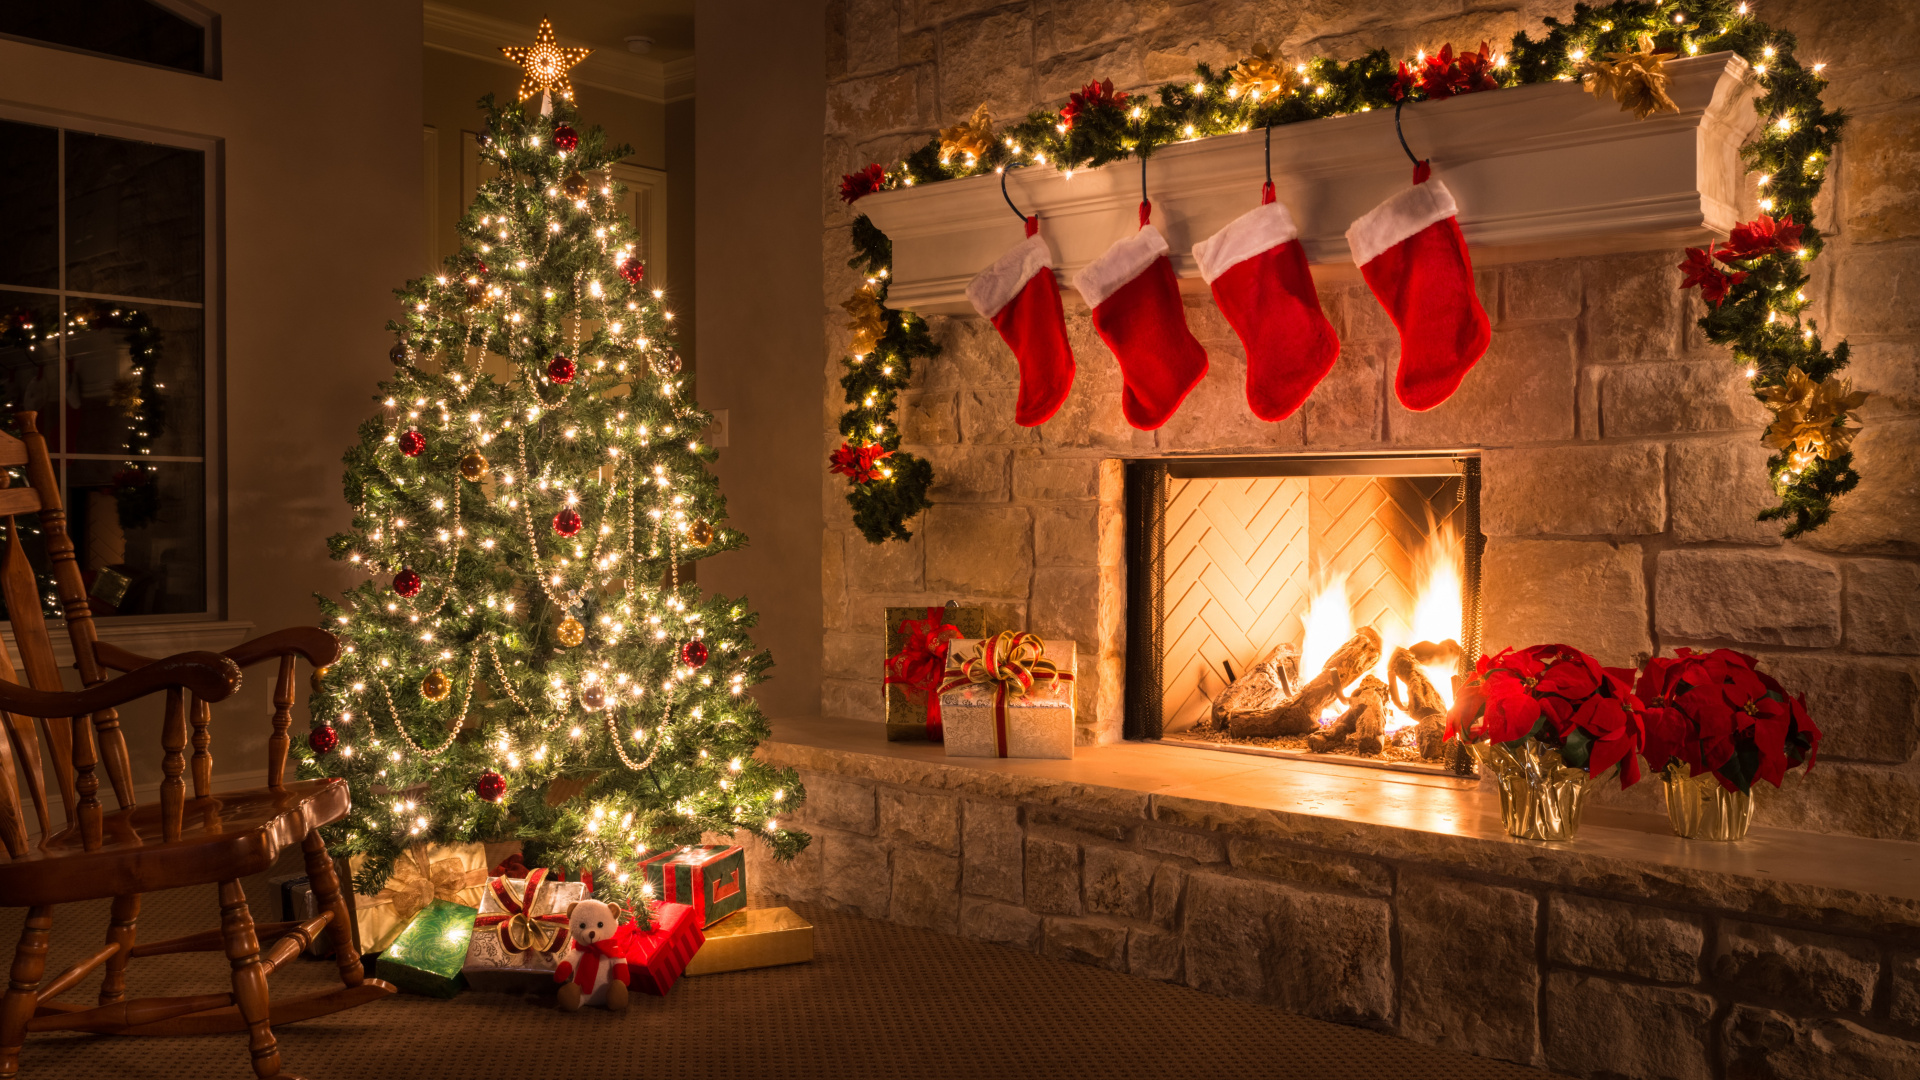 圣诞节那天, 圣诞装饰, 圣诞树, 圣诞节, 圣诞前夕 壁纸 1920x1080 允许